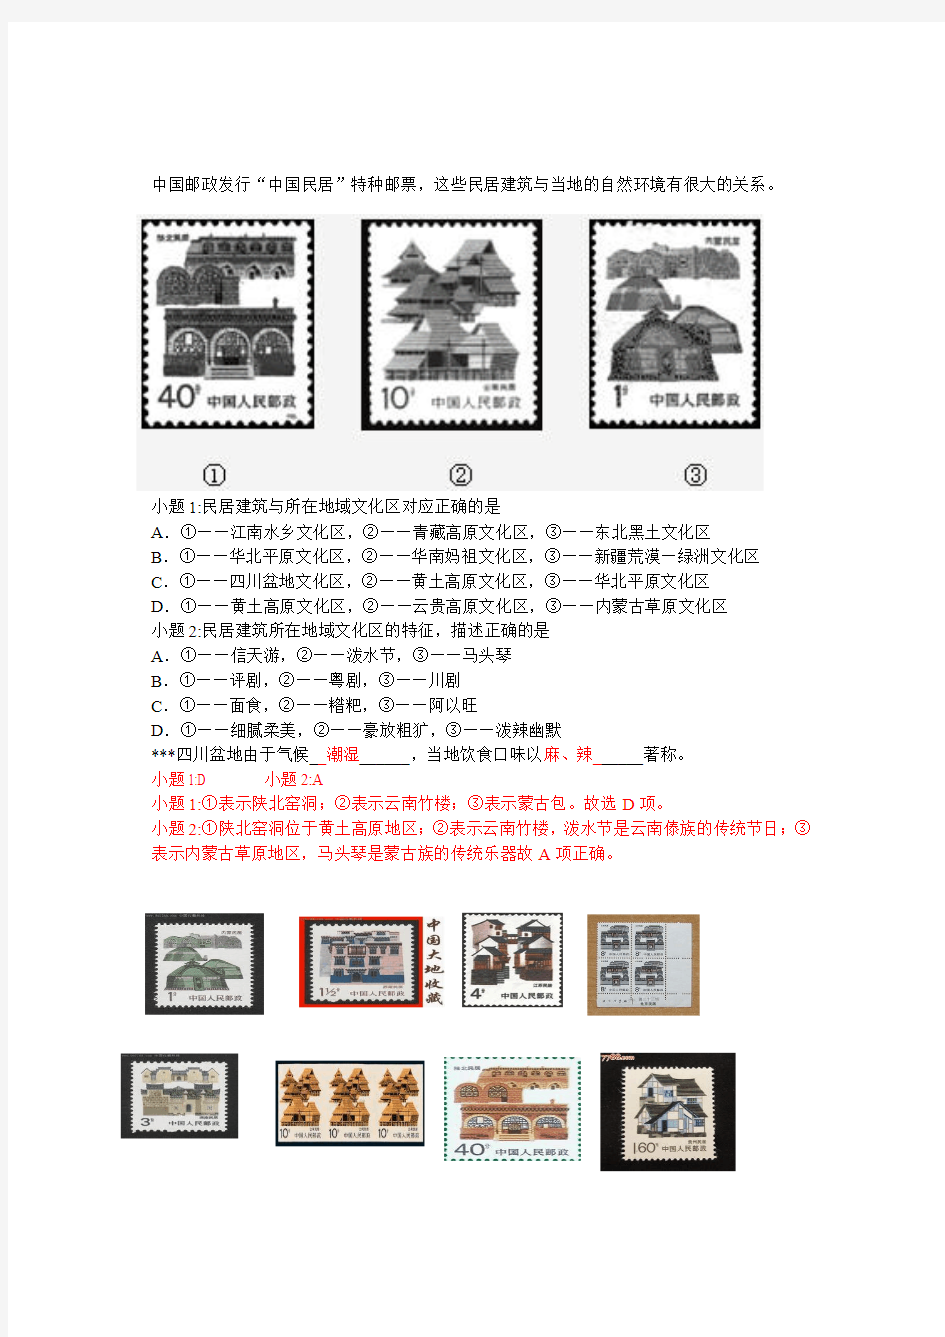 中国邮政发行中国民居特种邮票,这些民居建筑与当地的